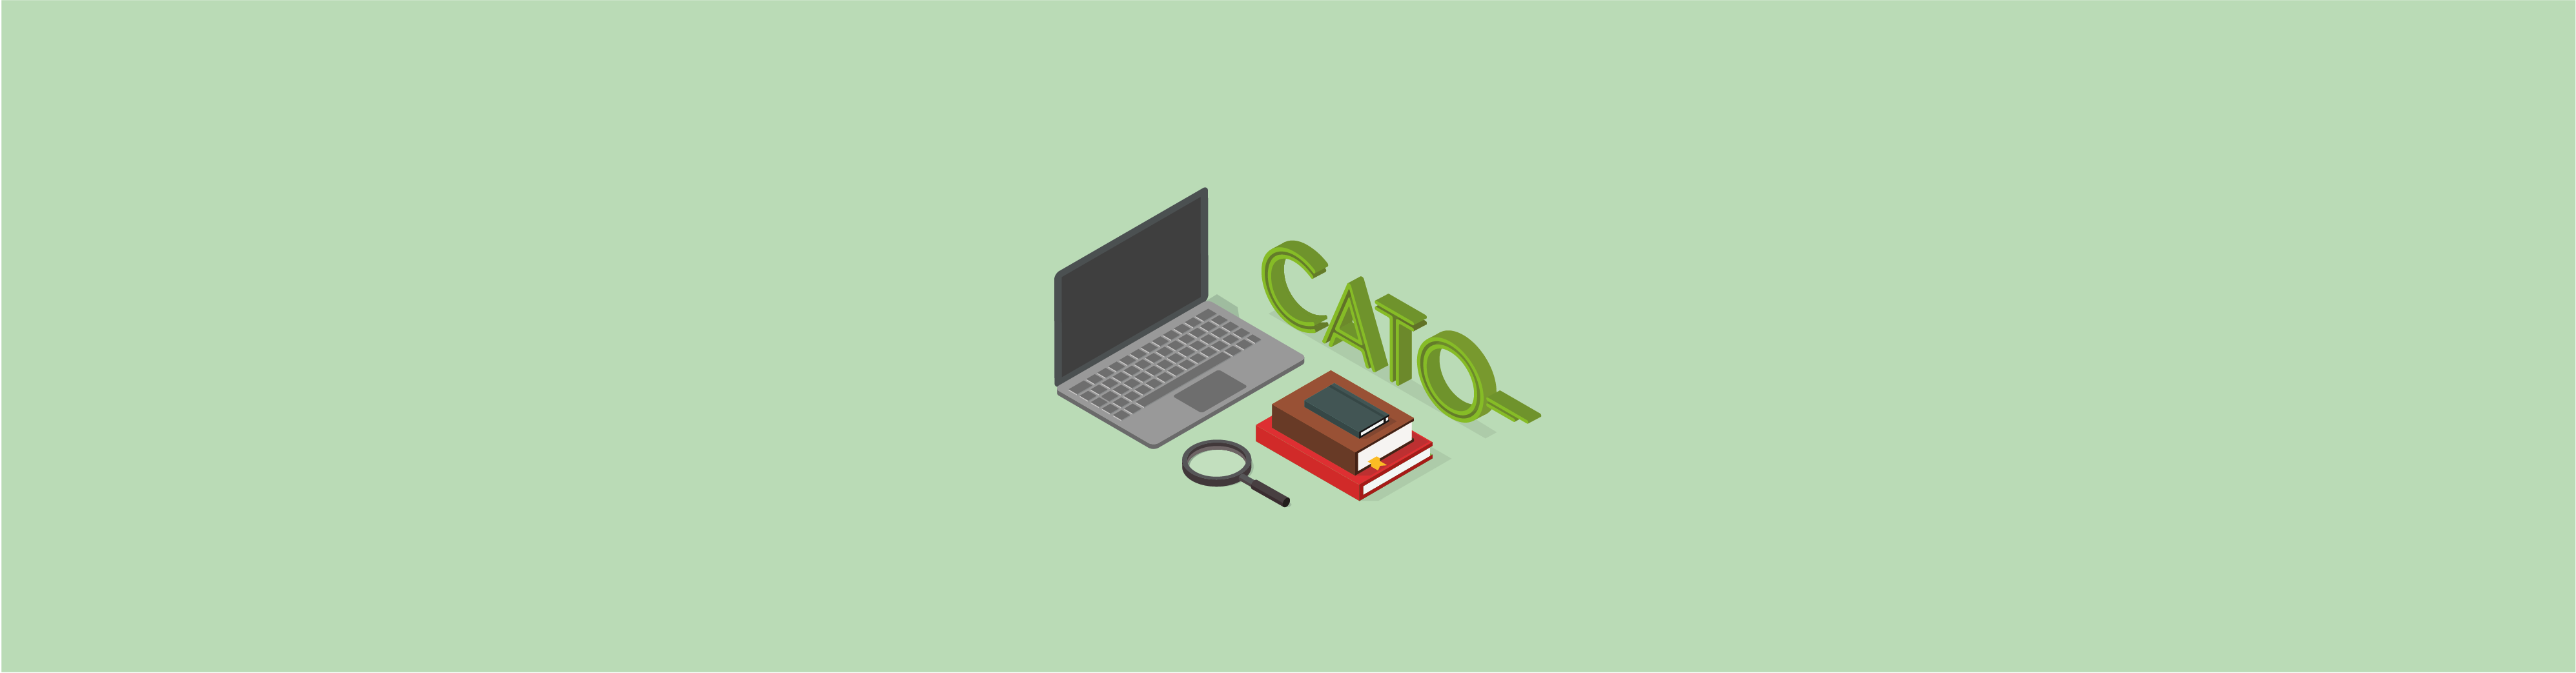 Cato Networks Case Study